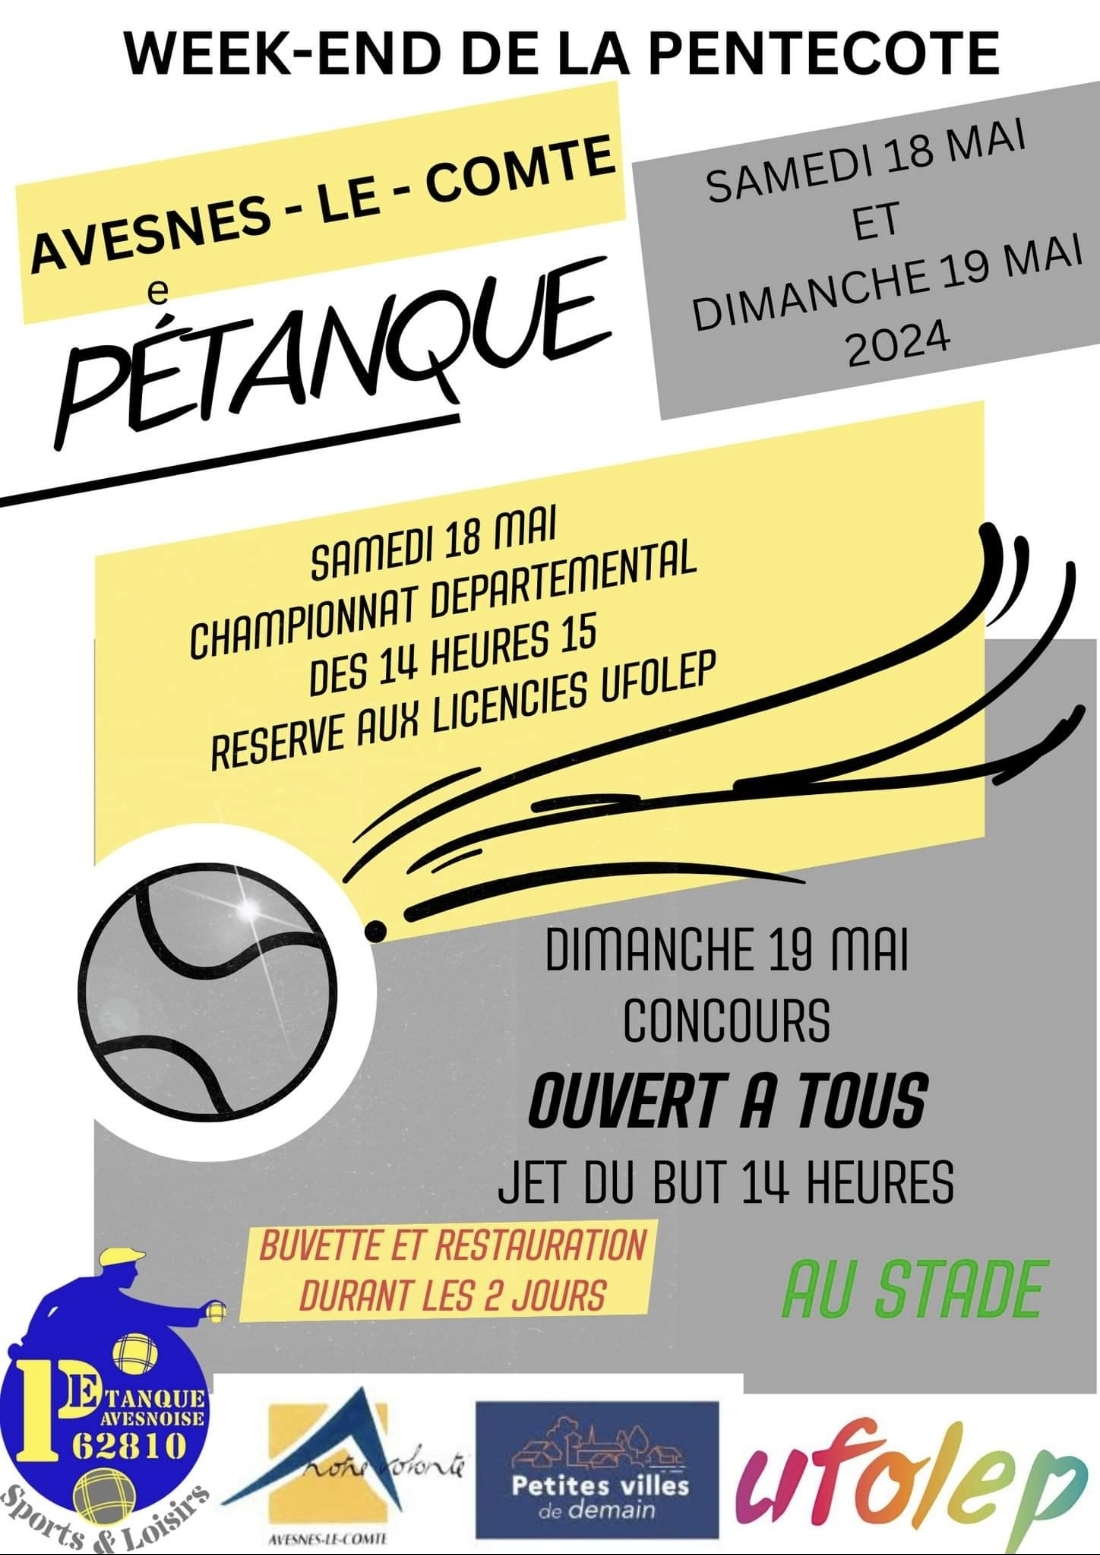 Concours en Doublette le 19 mai 2024 - Avesnes-le-Comte - 62810